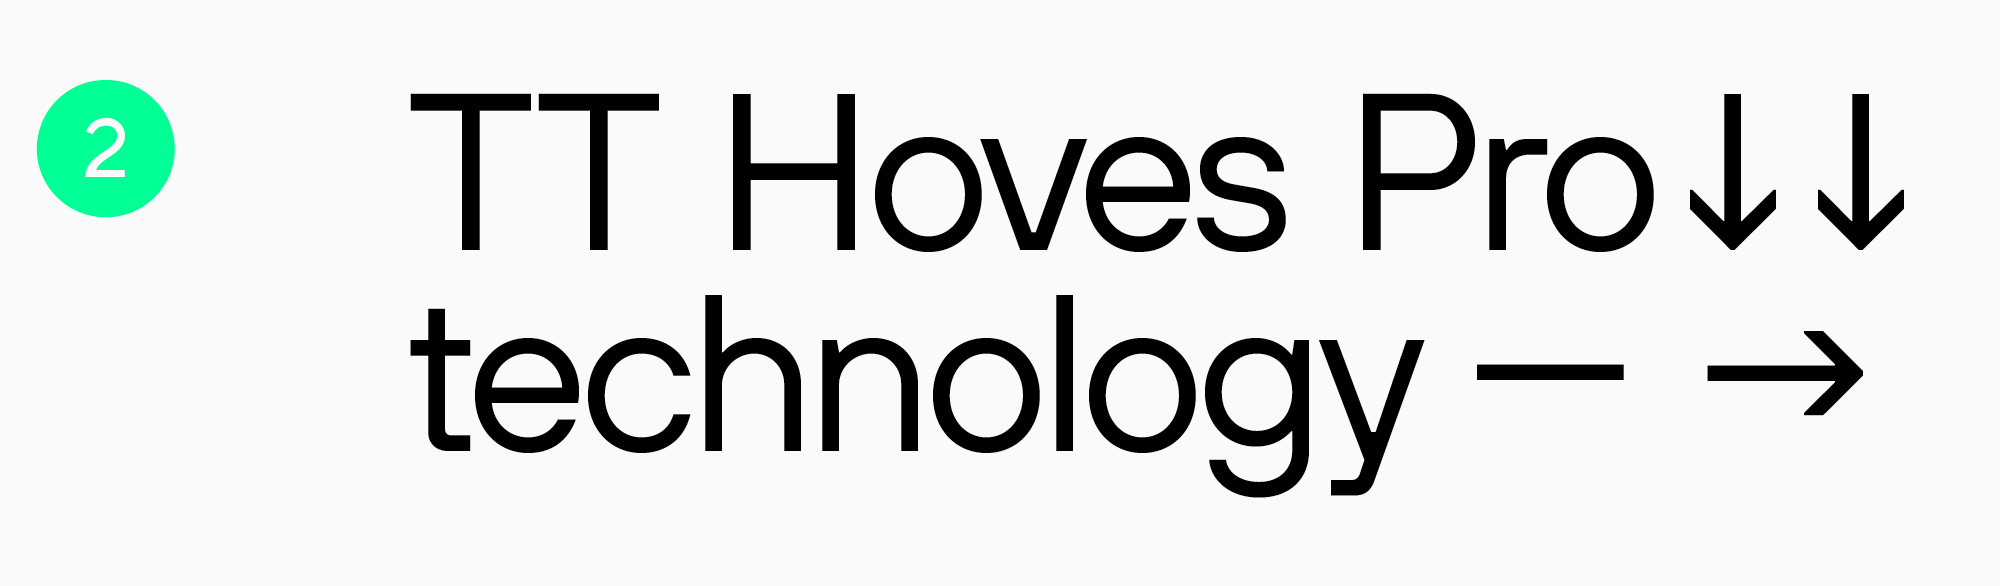 лучший шрифт для упаковки -TT Hoves Pro